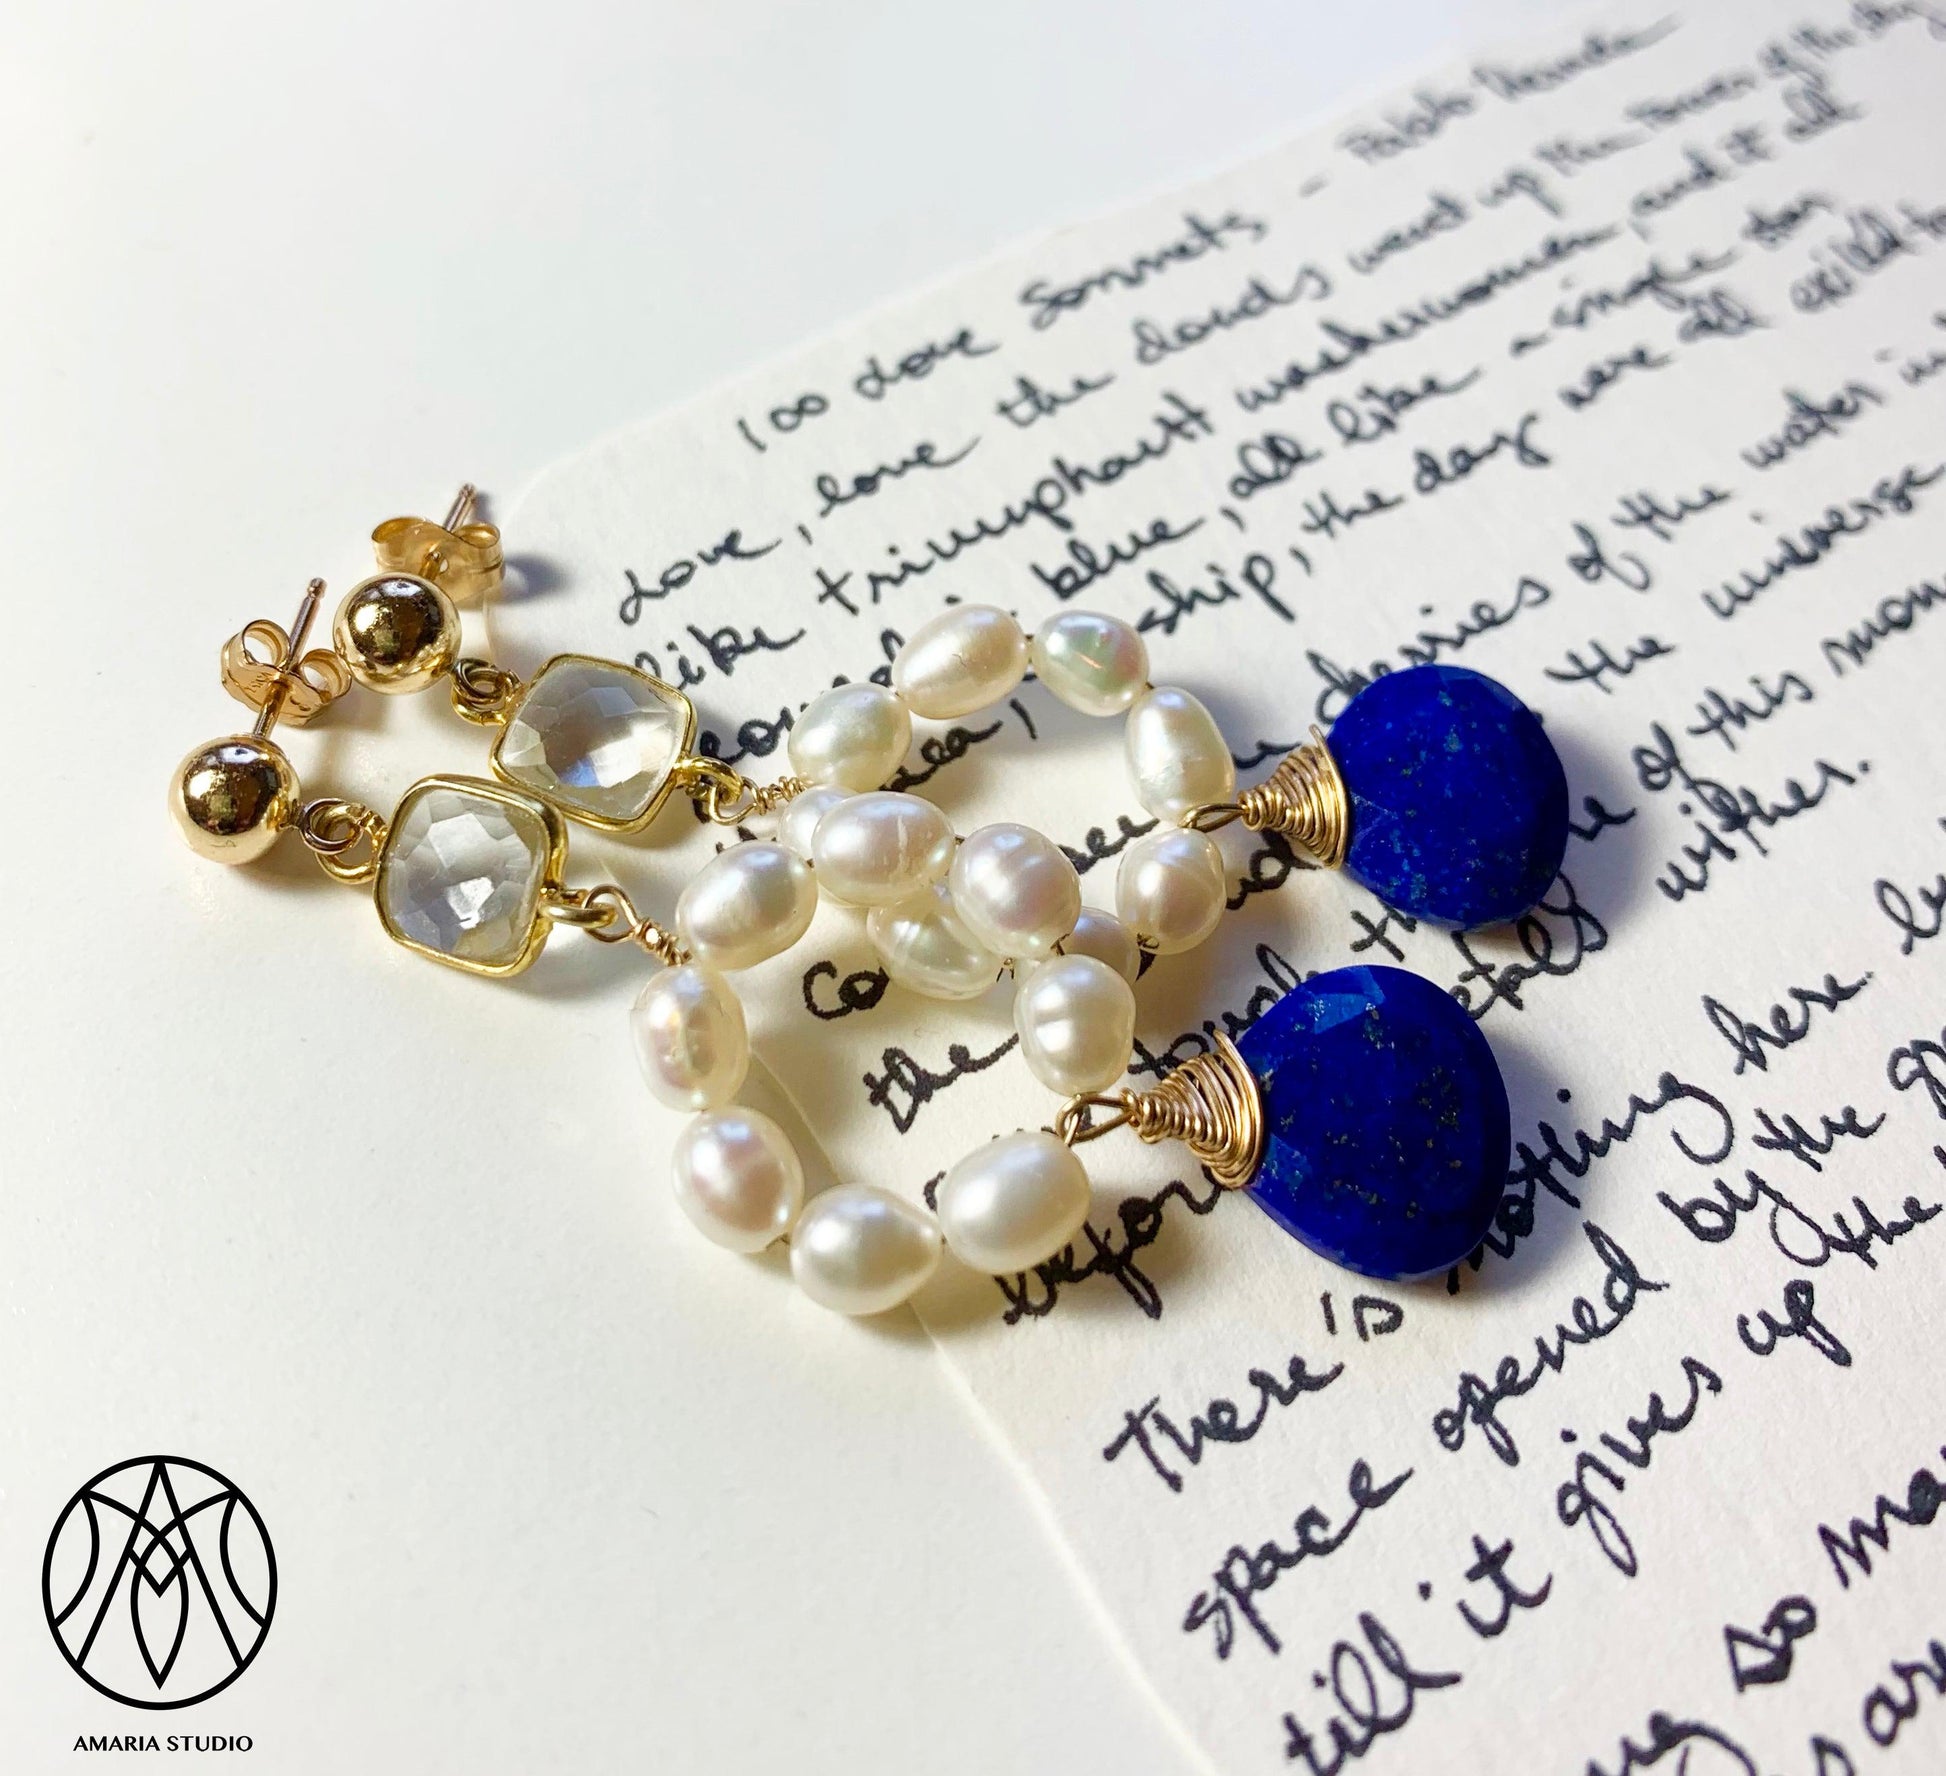 Quartz, pearl, lapis lazuli earrings - Amaria Studio